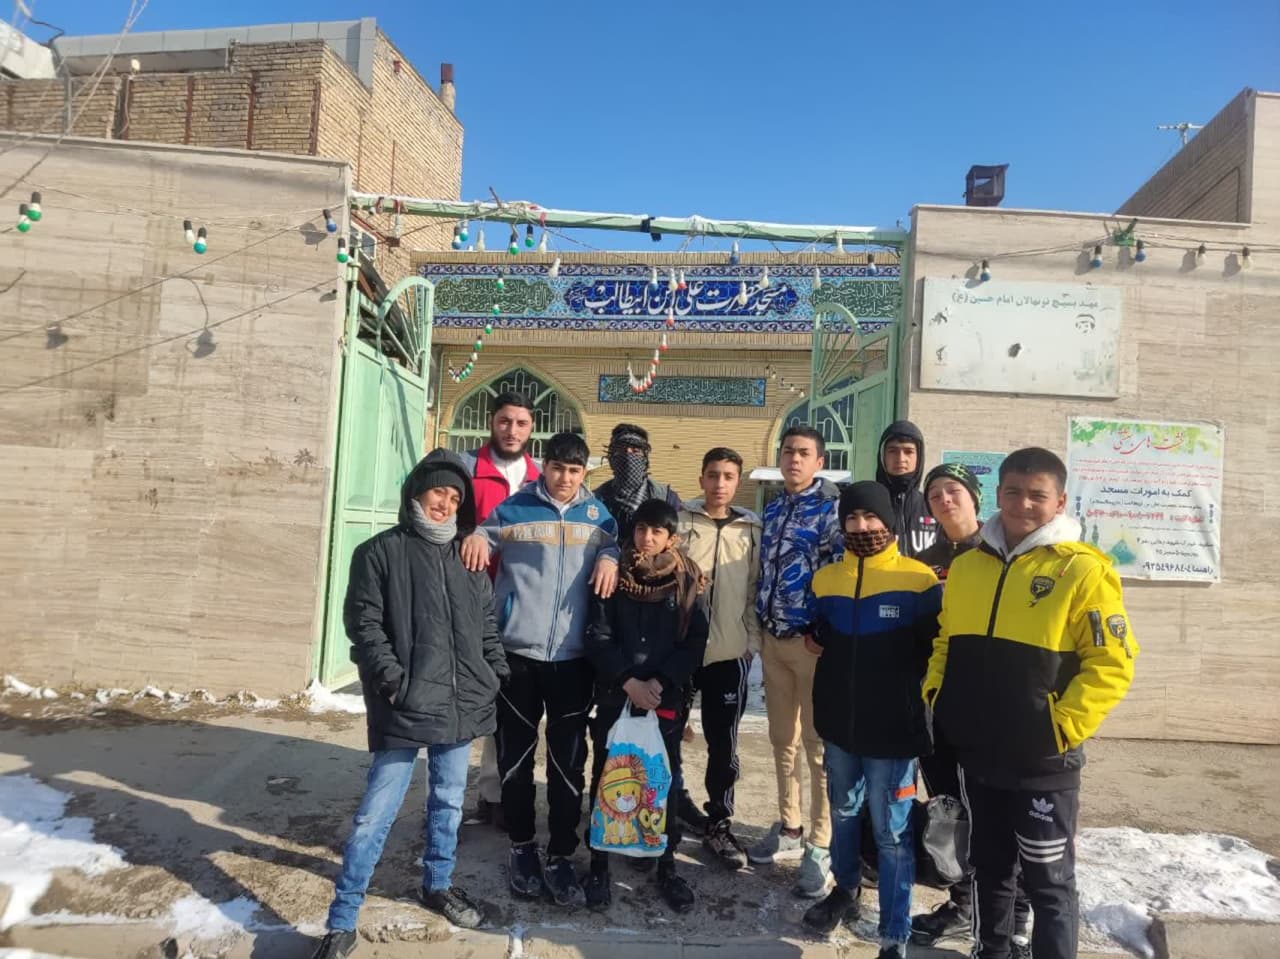 مسابقات آمادگی جسمانی برای نوجوانان مسجد در حاشیه شهر مشهد مقدس